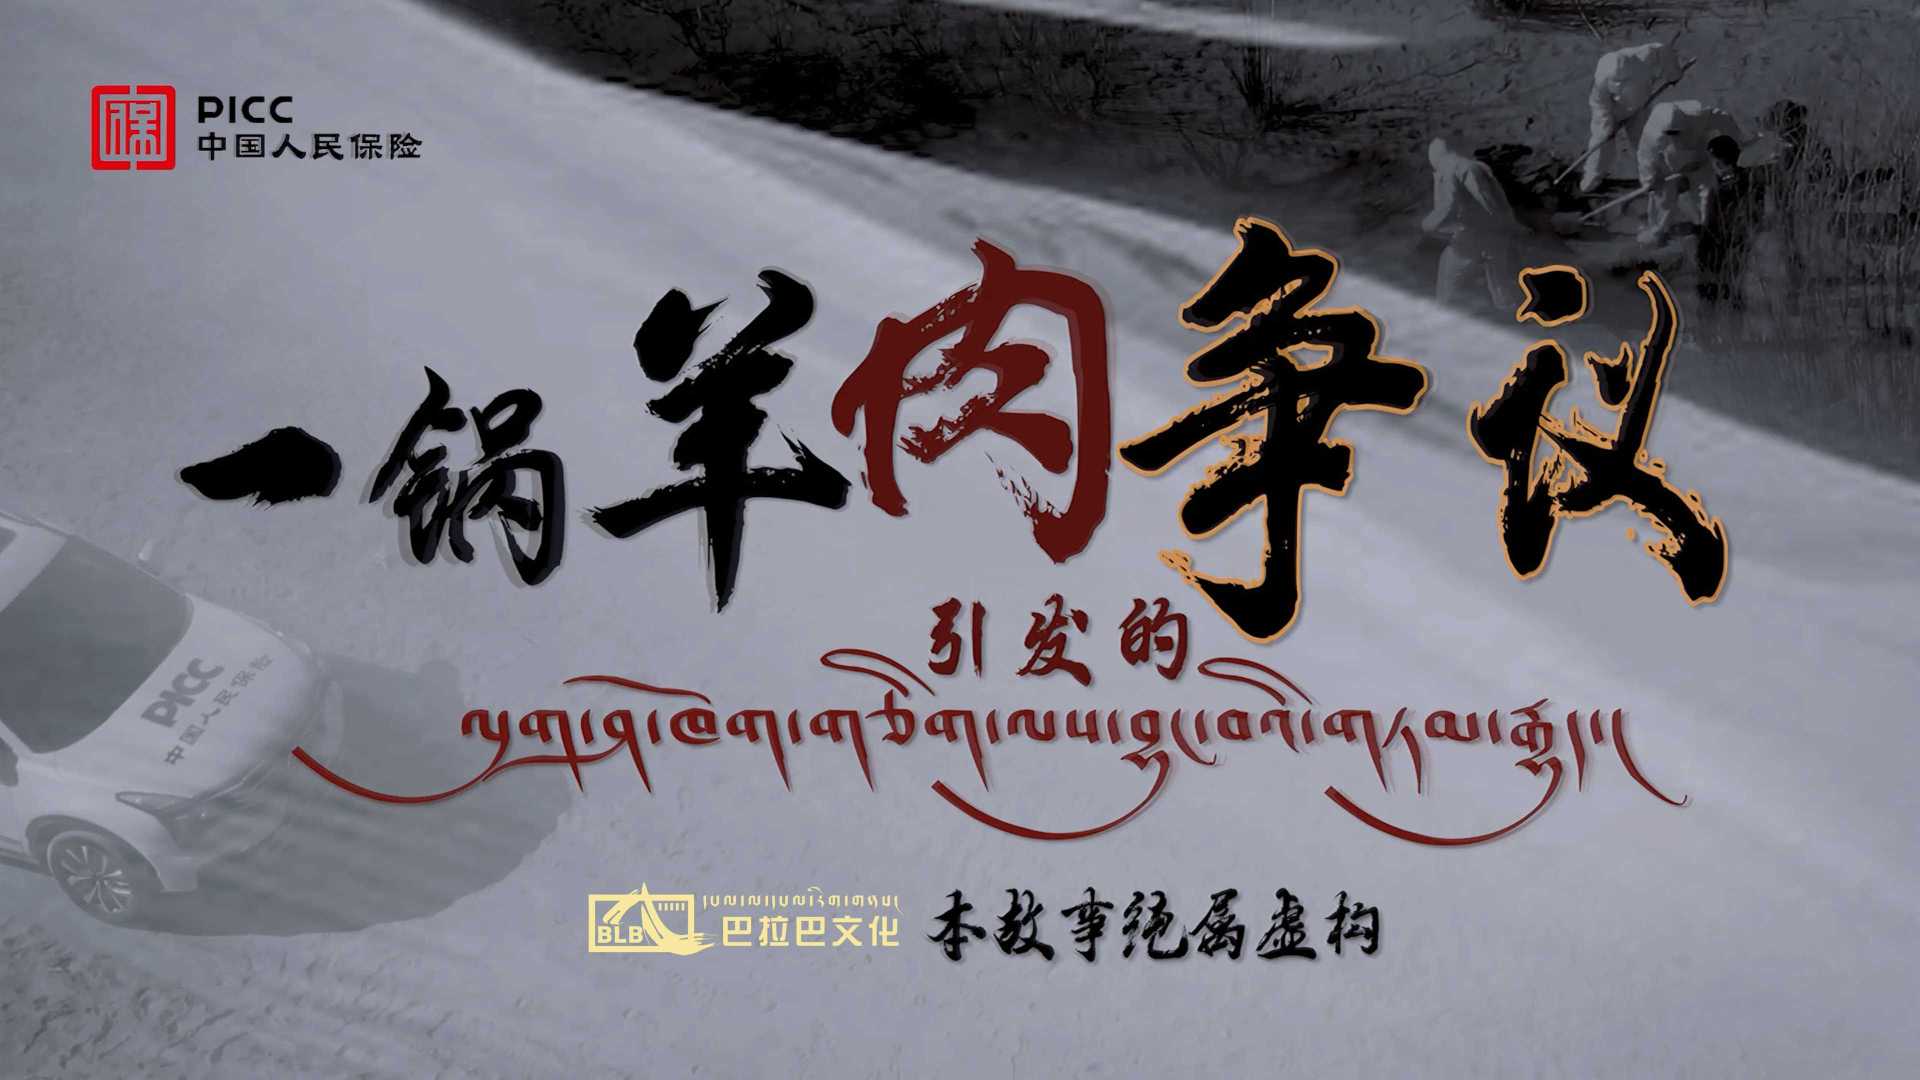 公益短视频|一锅羊肉引发的争议-中国人民保险日喀则分公司无害化处理公益广告-修改